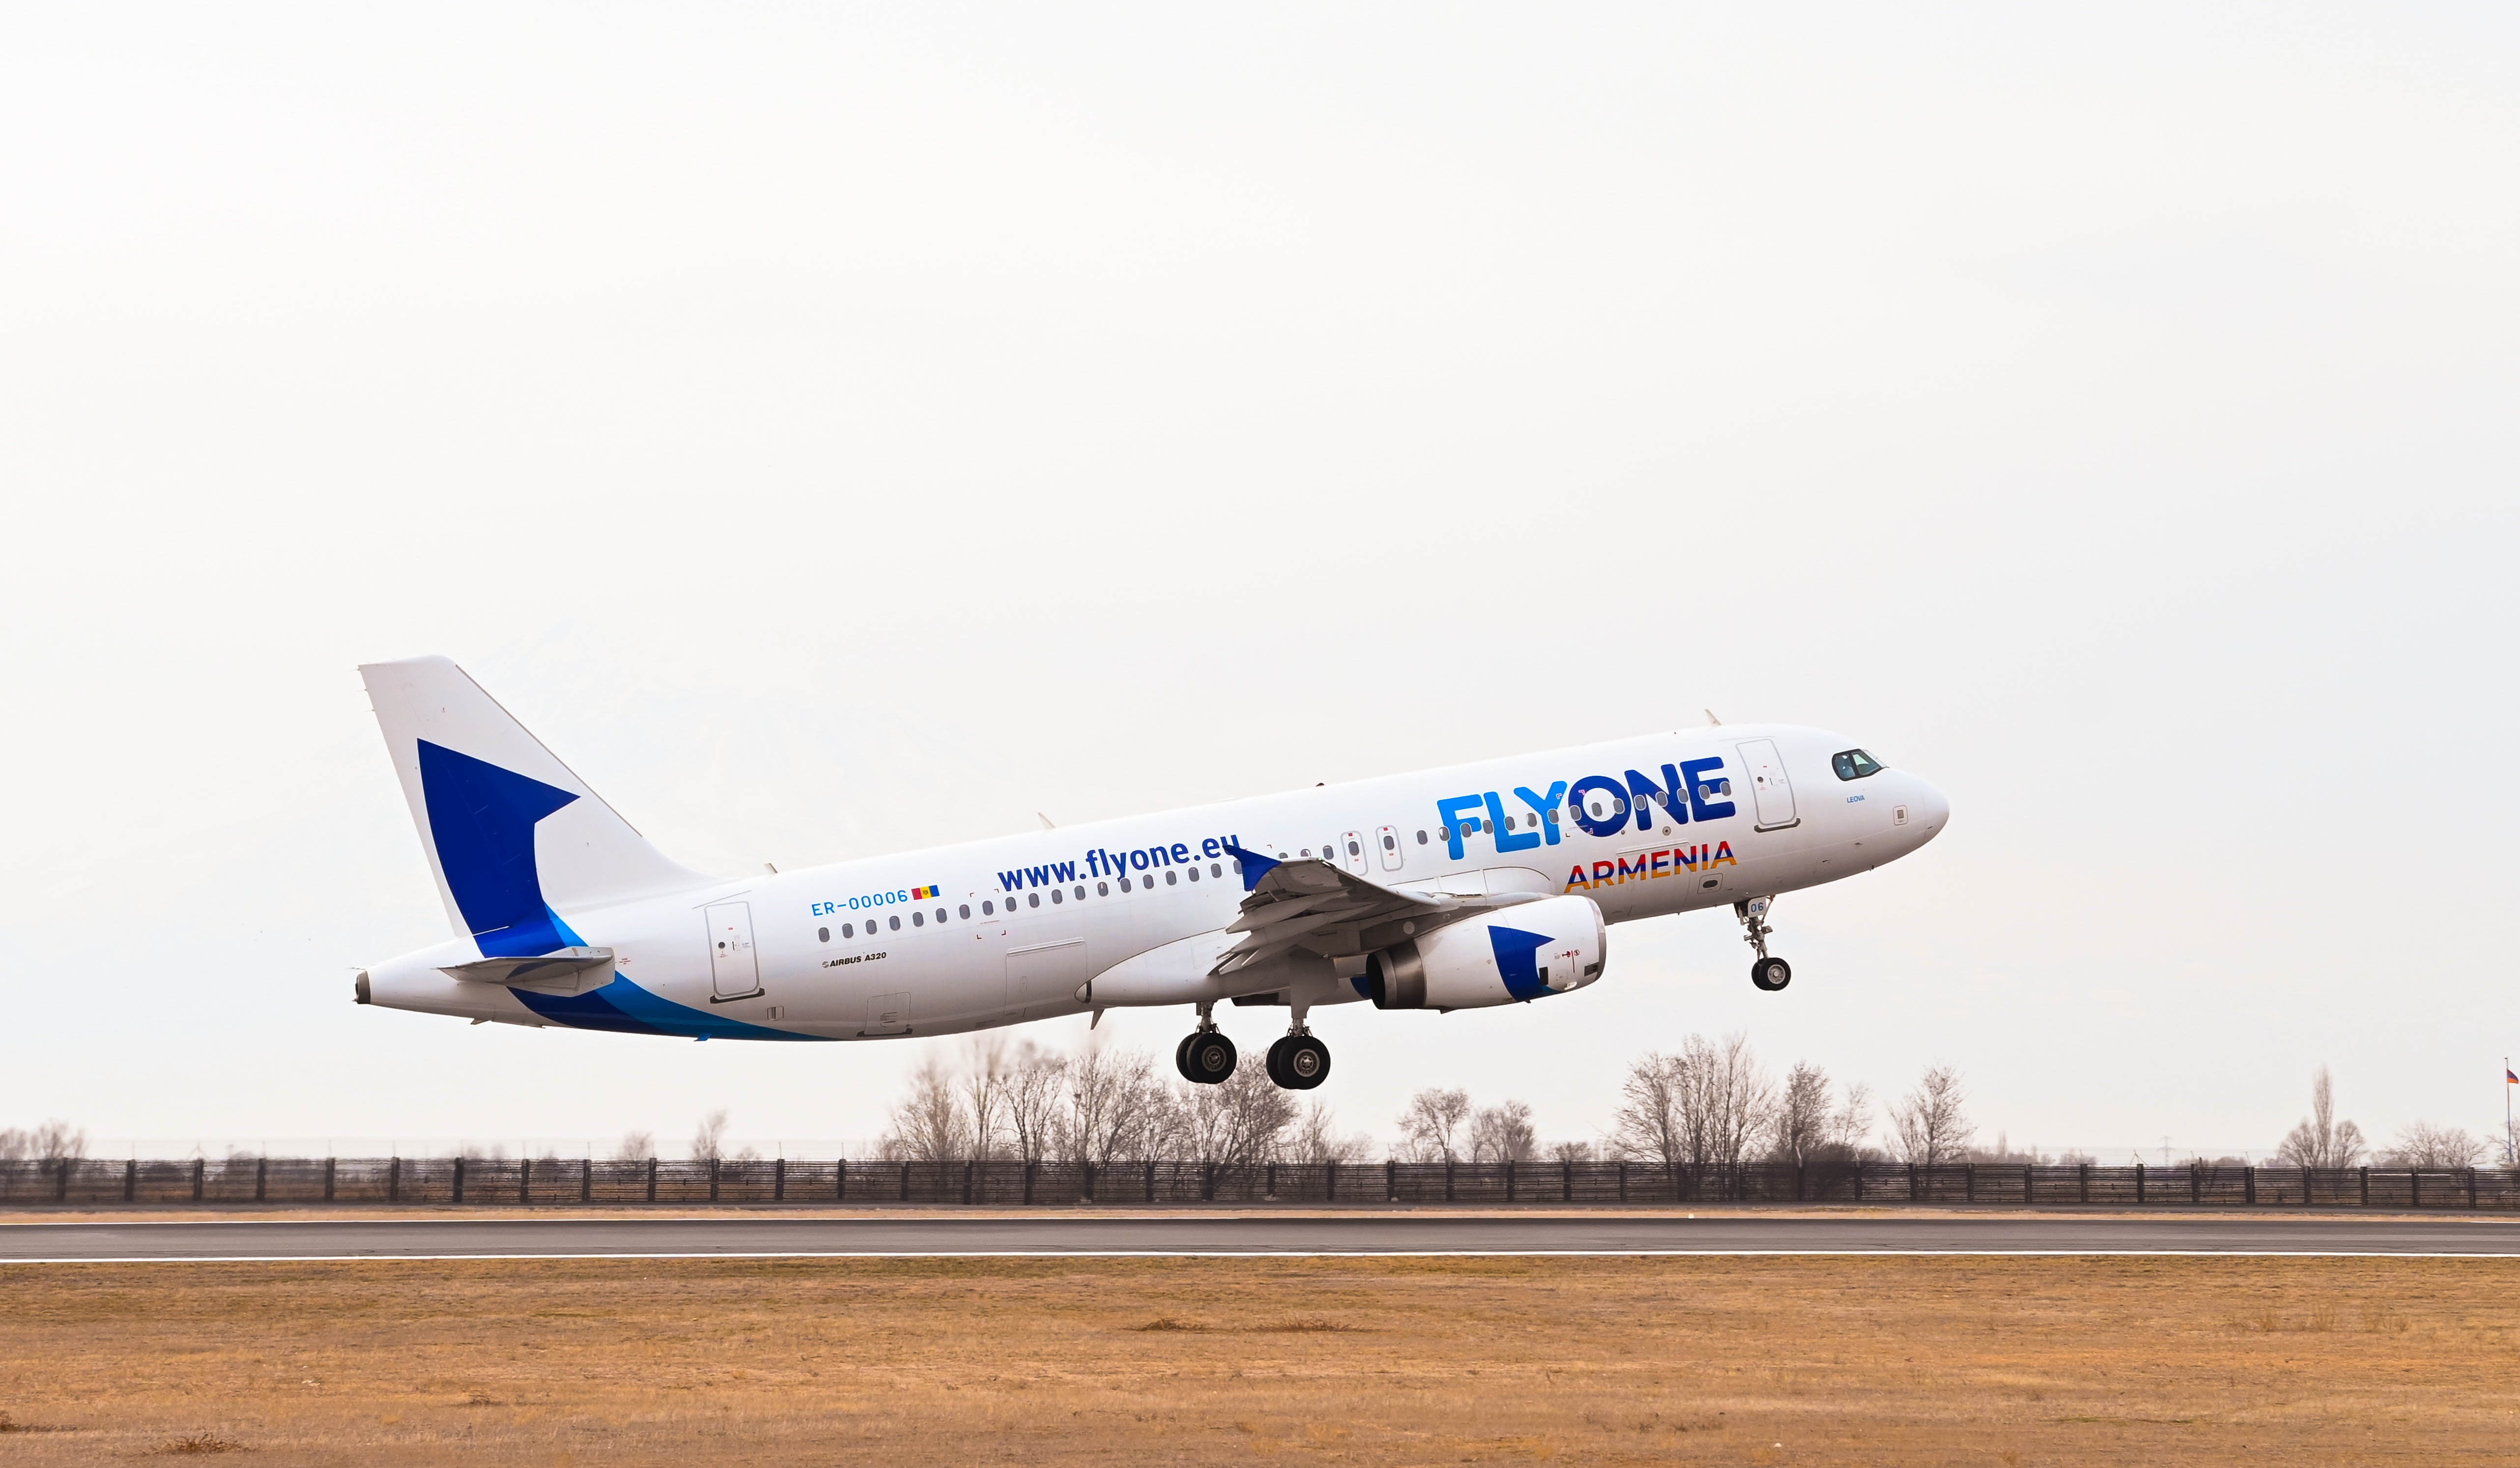 Flyone Armenia-ն վերսկսում է Երևան-Լիոն-Երևան և Երևան-Փարիզ-Երևան երթուղով կանոնավոր ուղիղ չվերթերը